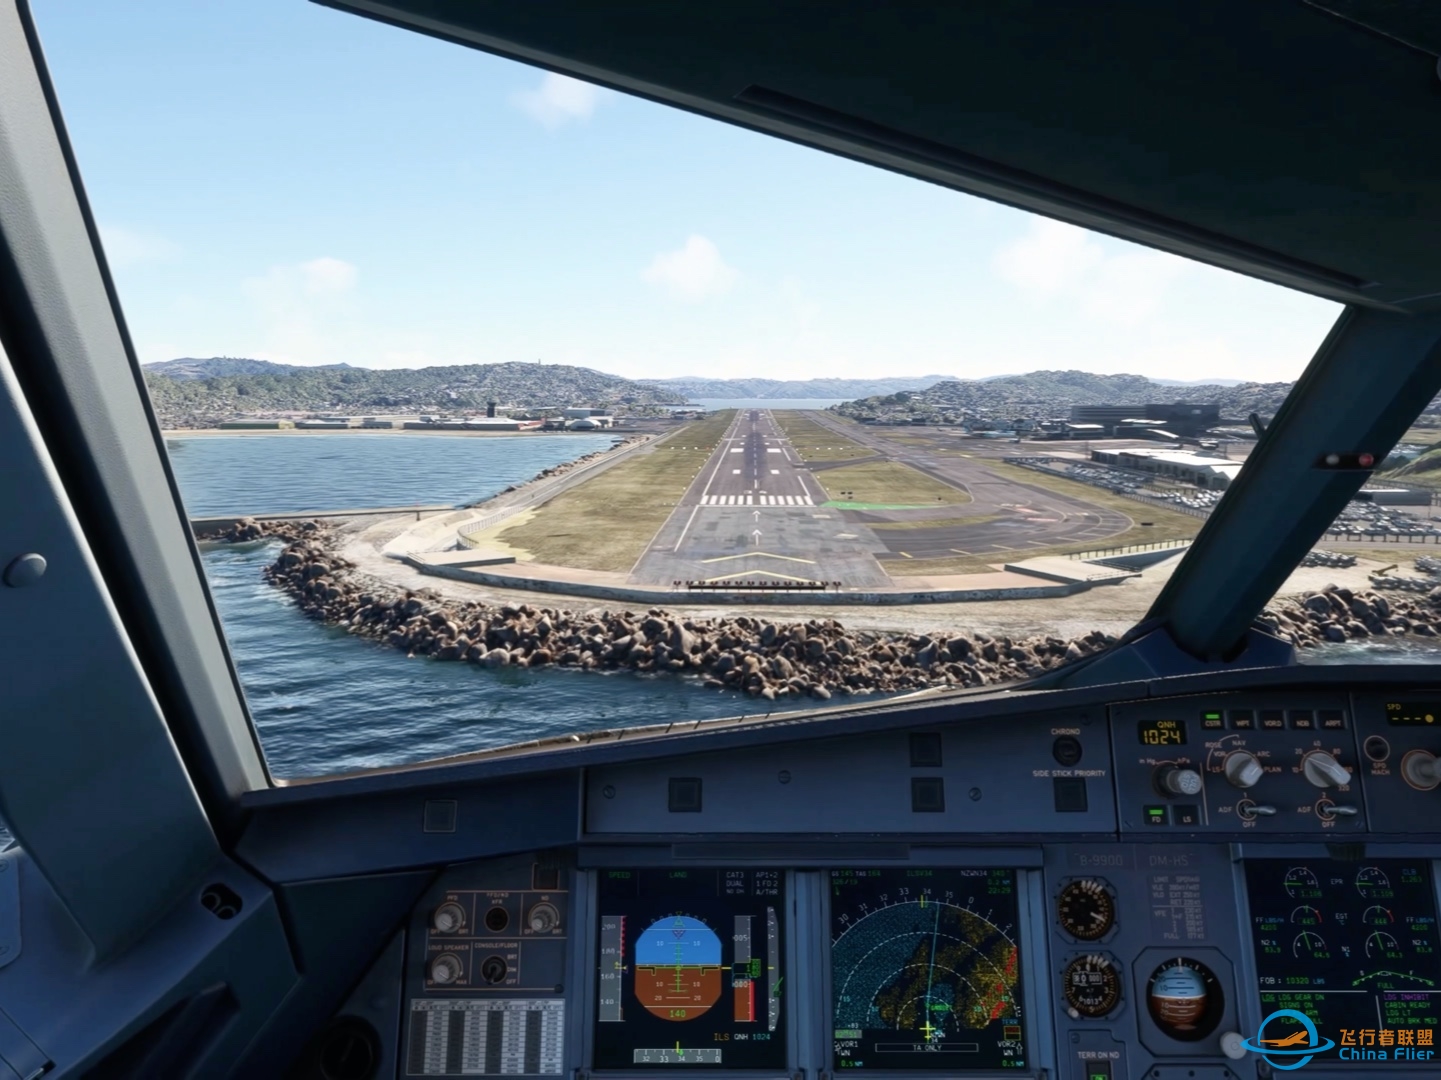 降落微软飞行模拟2020最喜欢的机场新西兰惠灵顿机场-8636 